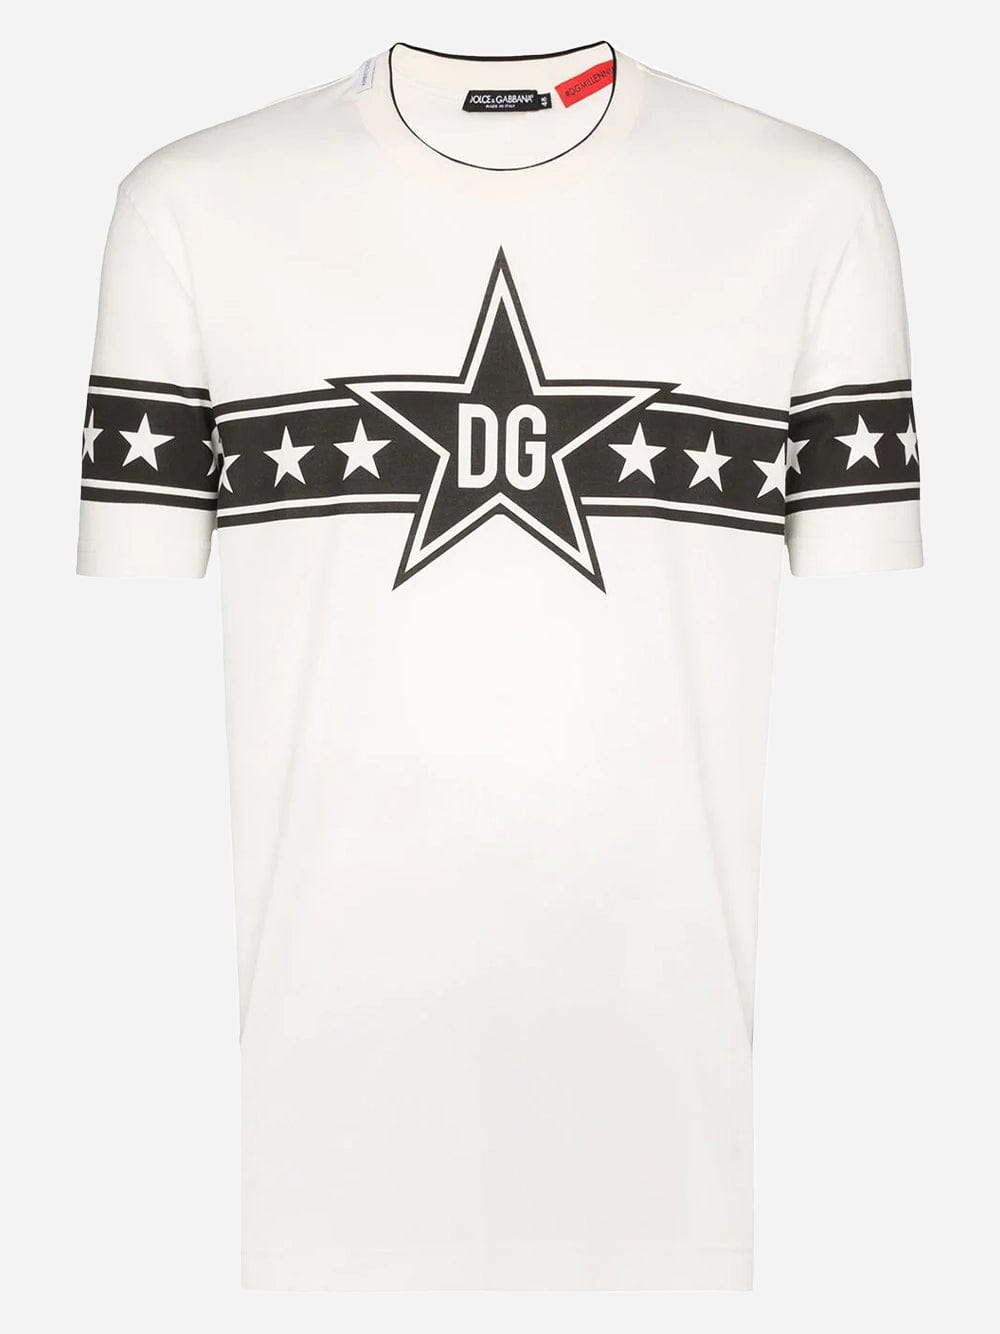 Dolce & Gabbana DG Star Logo Cotton T-Shirt